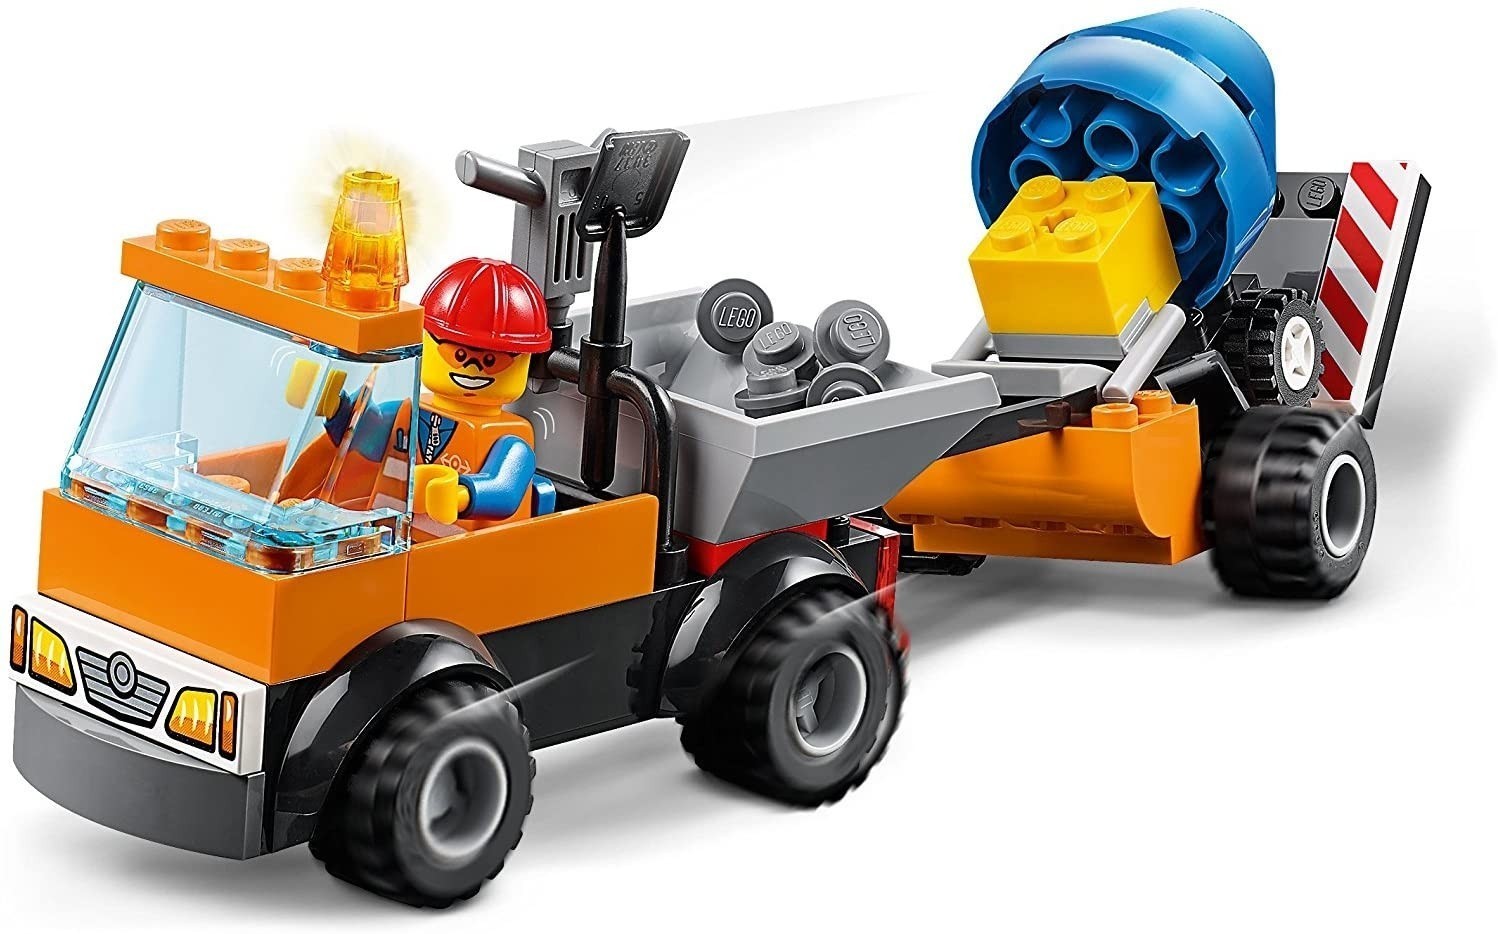 Lego Juniors 10750 Camión de Obra en Carretera